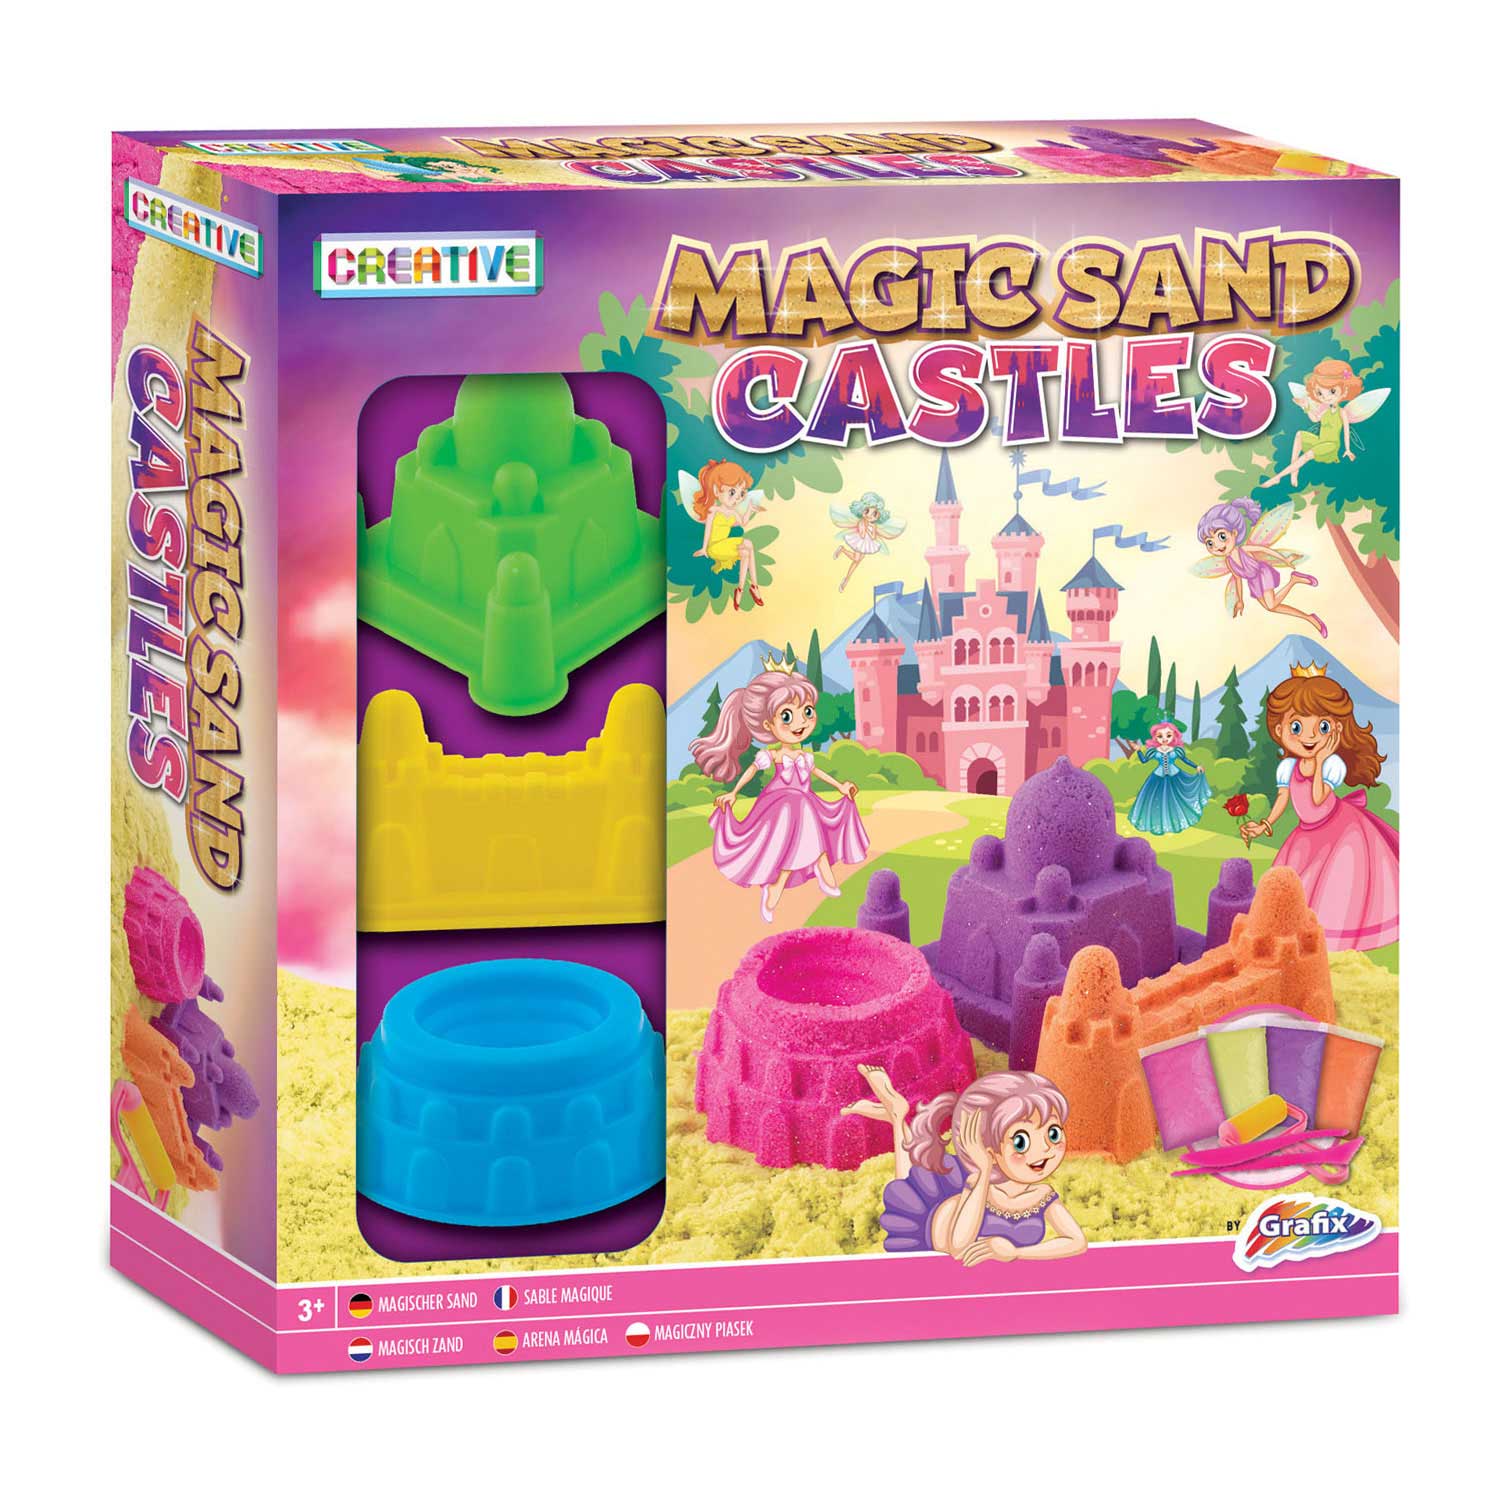 Magisches Sandburg-Set – Prinzessin